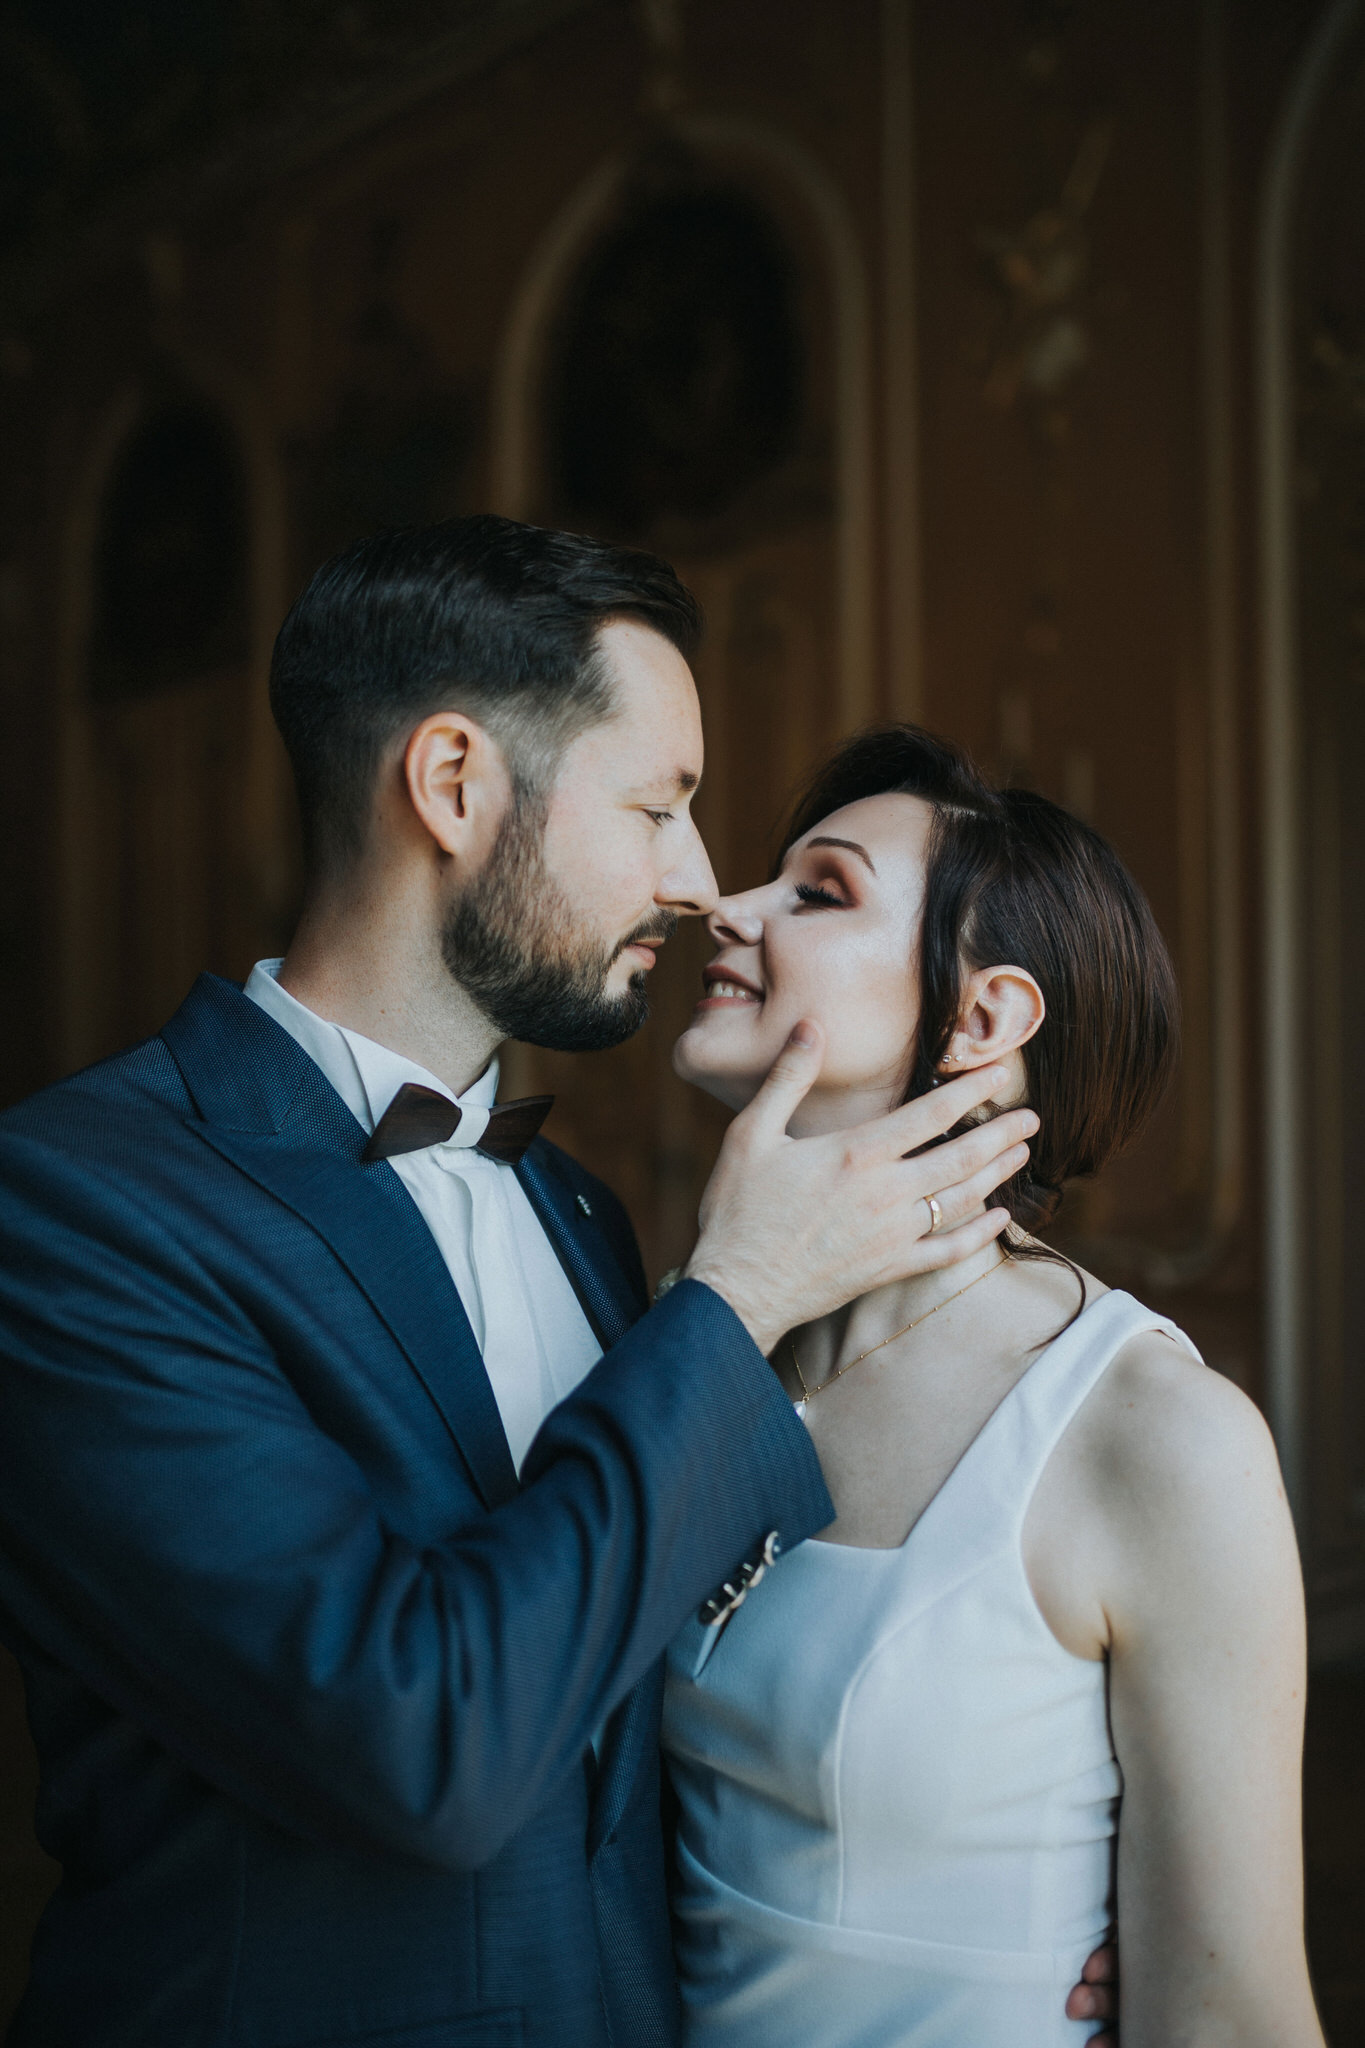 Magischer Moment der standesamtlichen Trauung in Schloss Wilhelmsthal – Das Brautpaar erlebt einen unvergesslichen Tag, umrahmt von historischem Glanz und der romantischen Kulisse dieses zauberhaften Ortes.